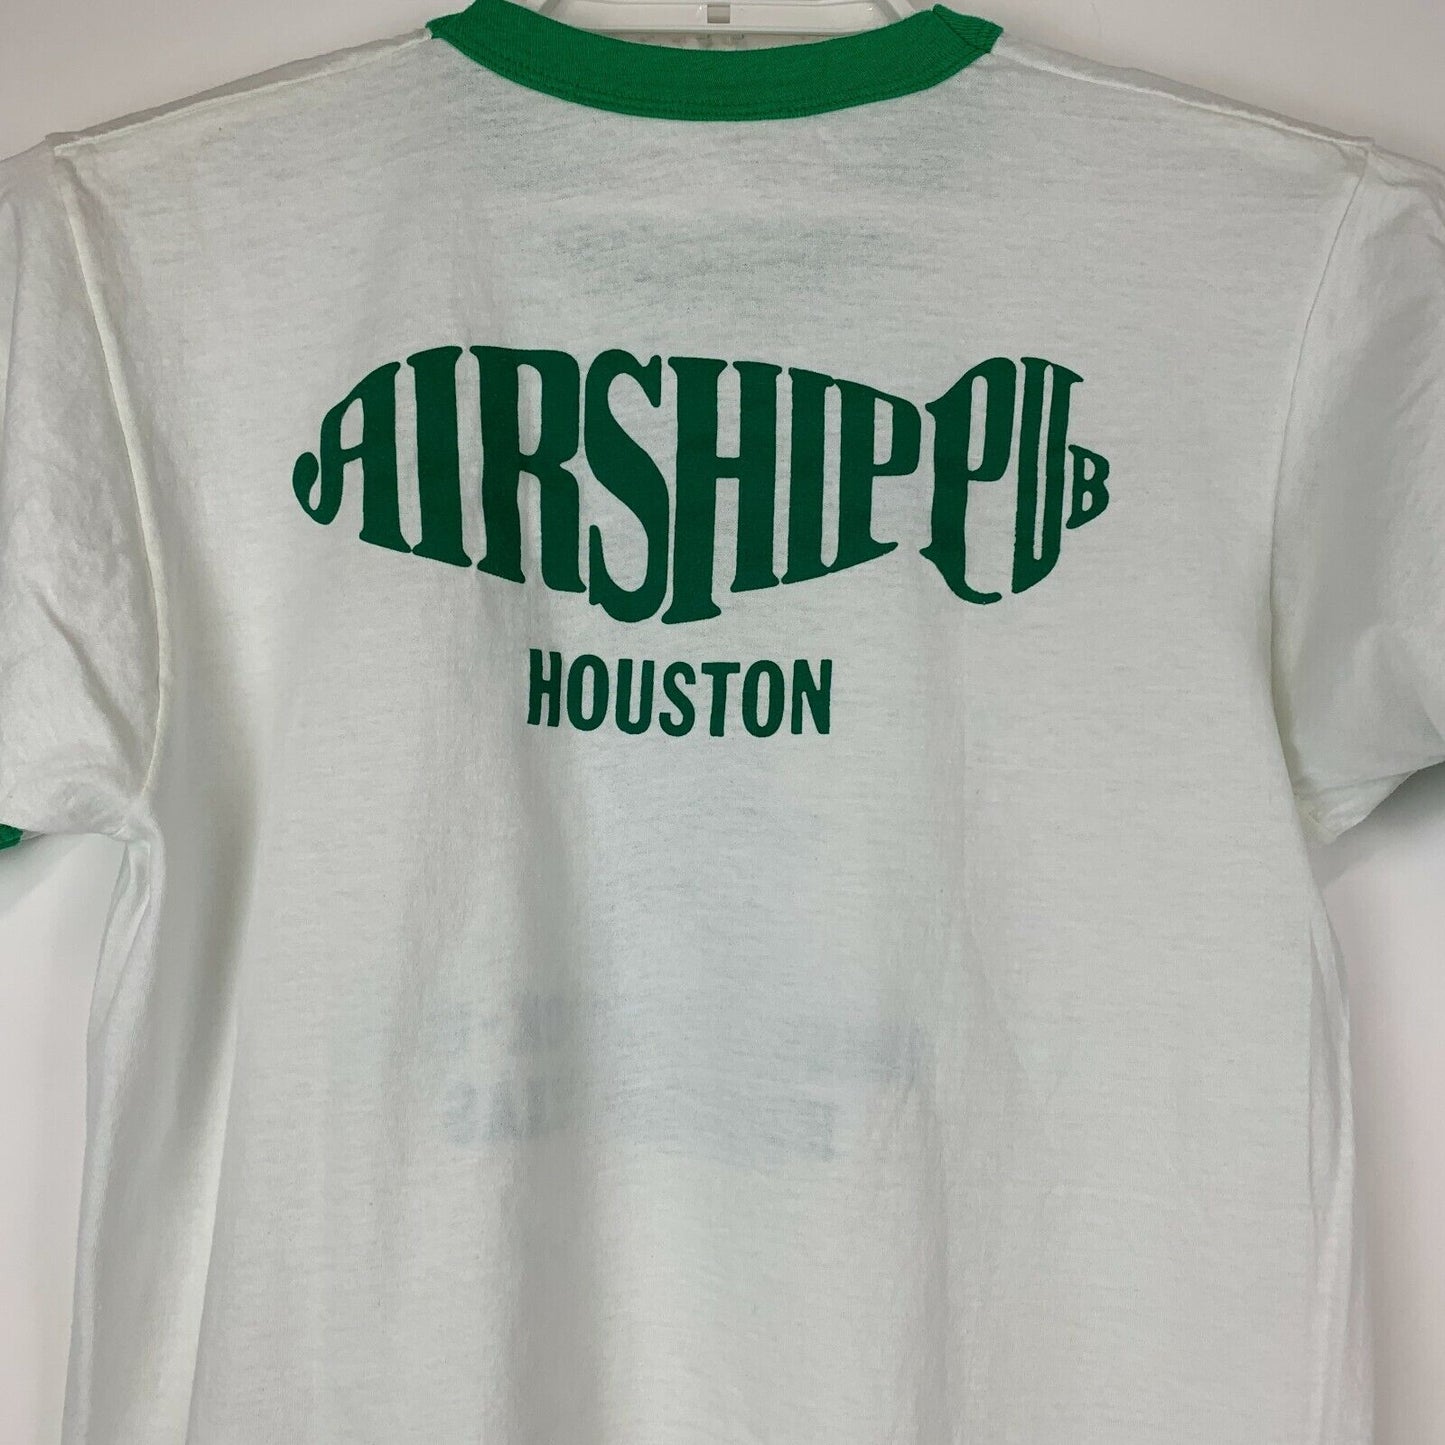 Airship Pub Houston Vintage 80s T Shirt Medium Irish St Patricks Day Mens White